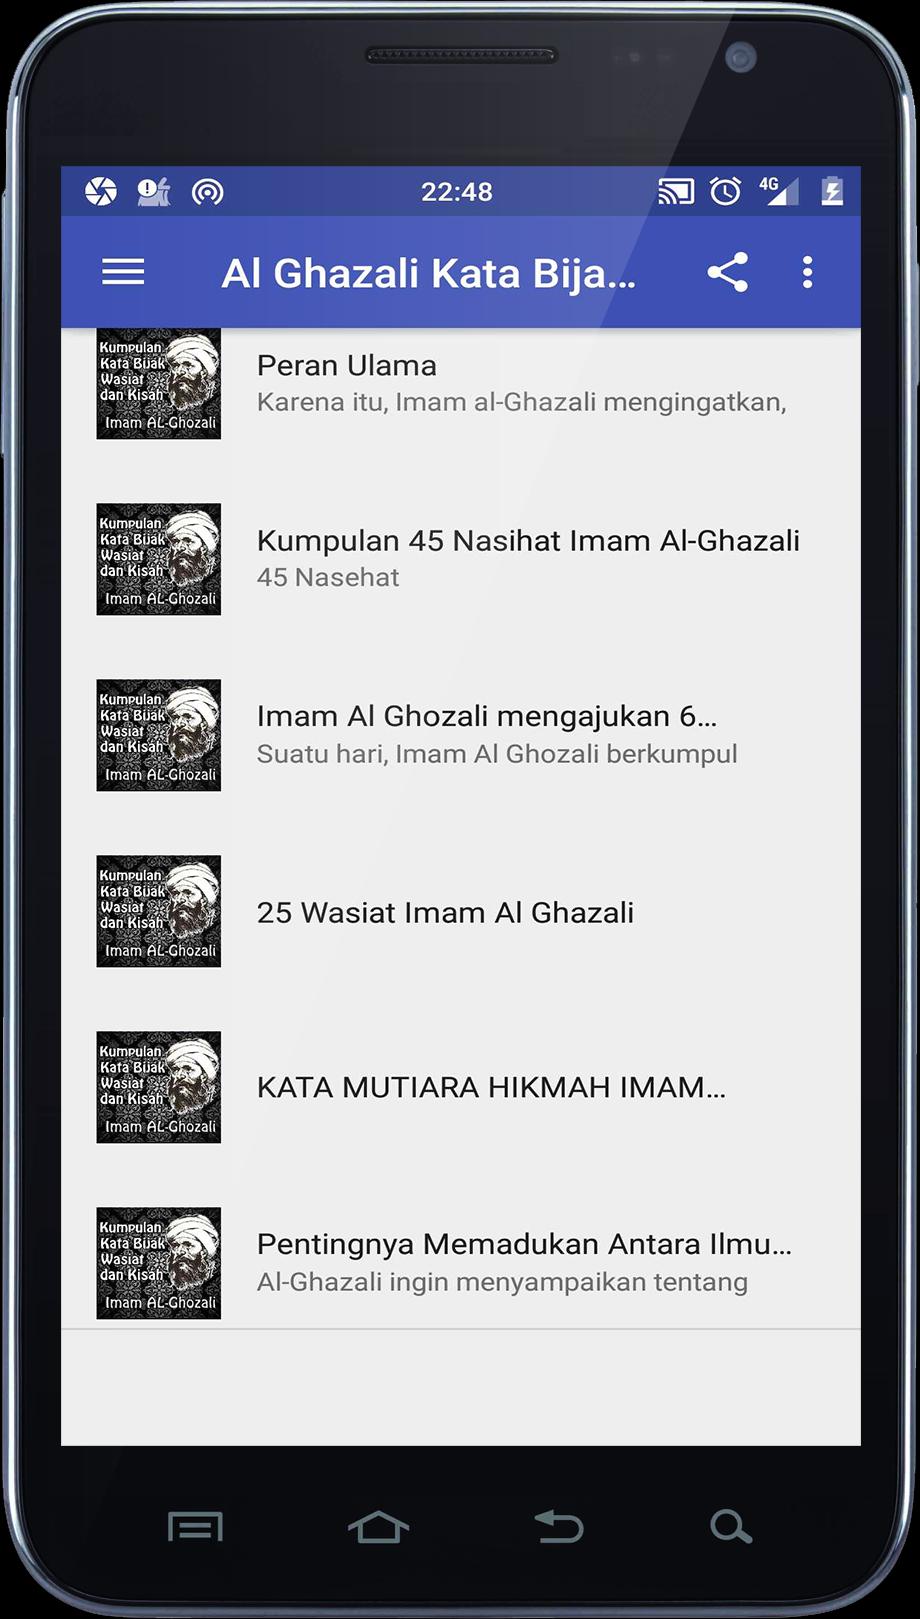 Al Ghazali Kata Bijak Wasiat Dan Kisah For Android Apk Download